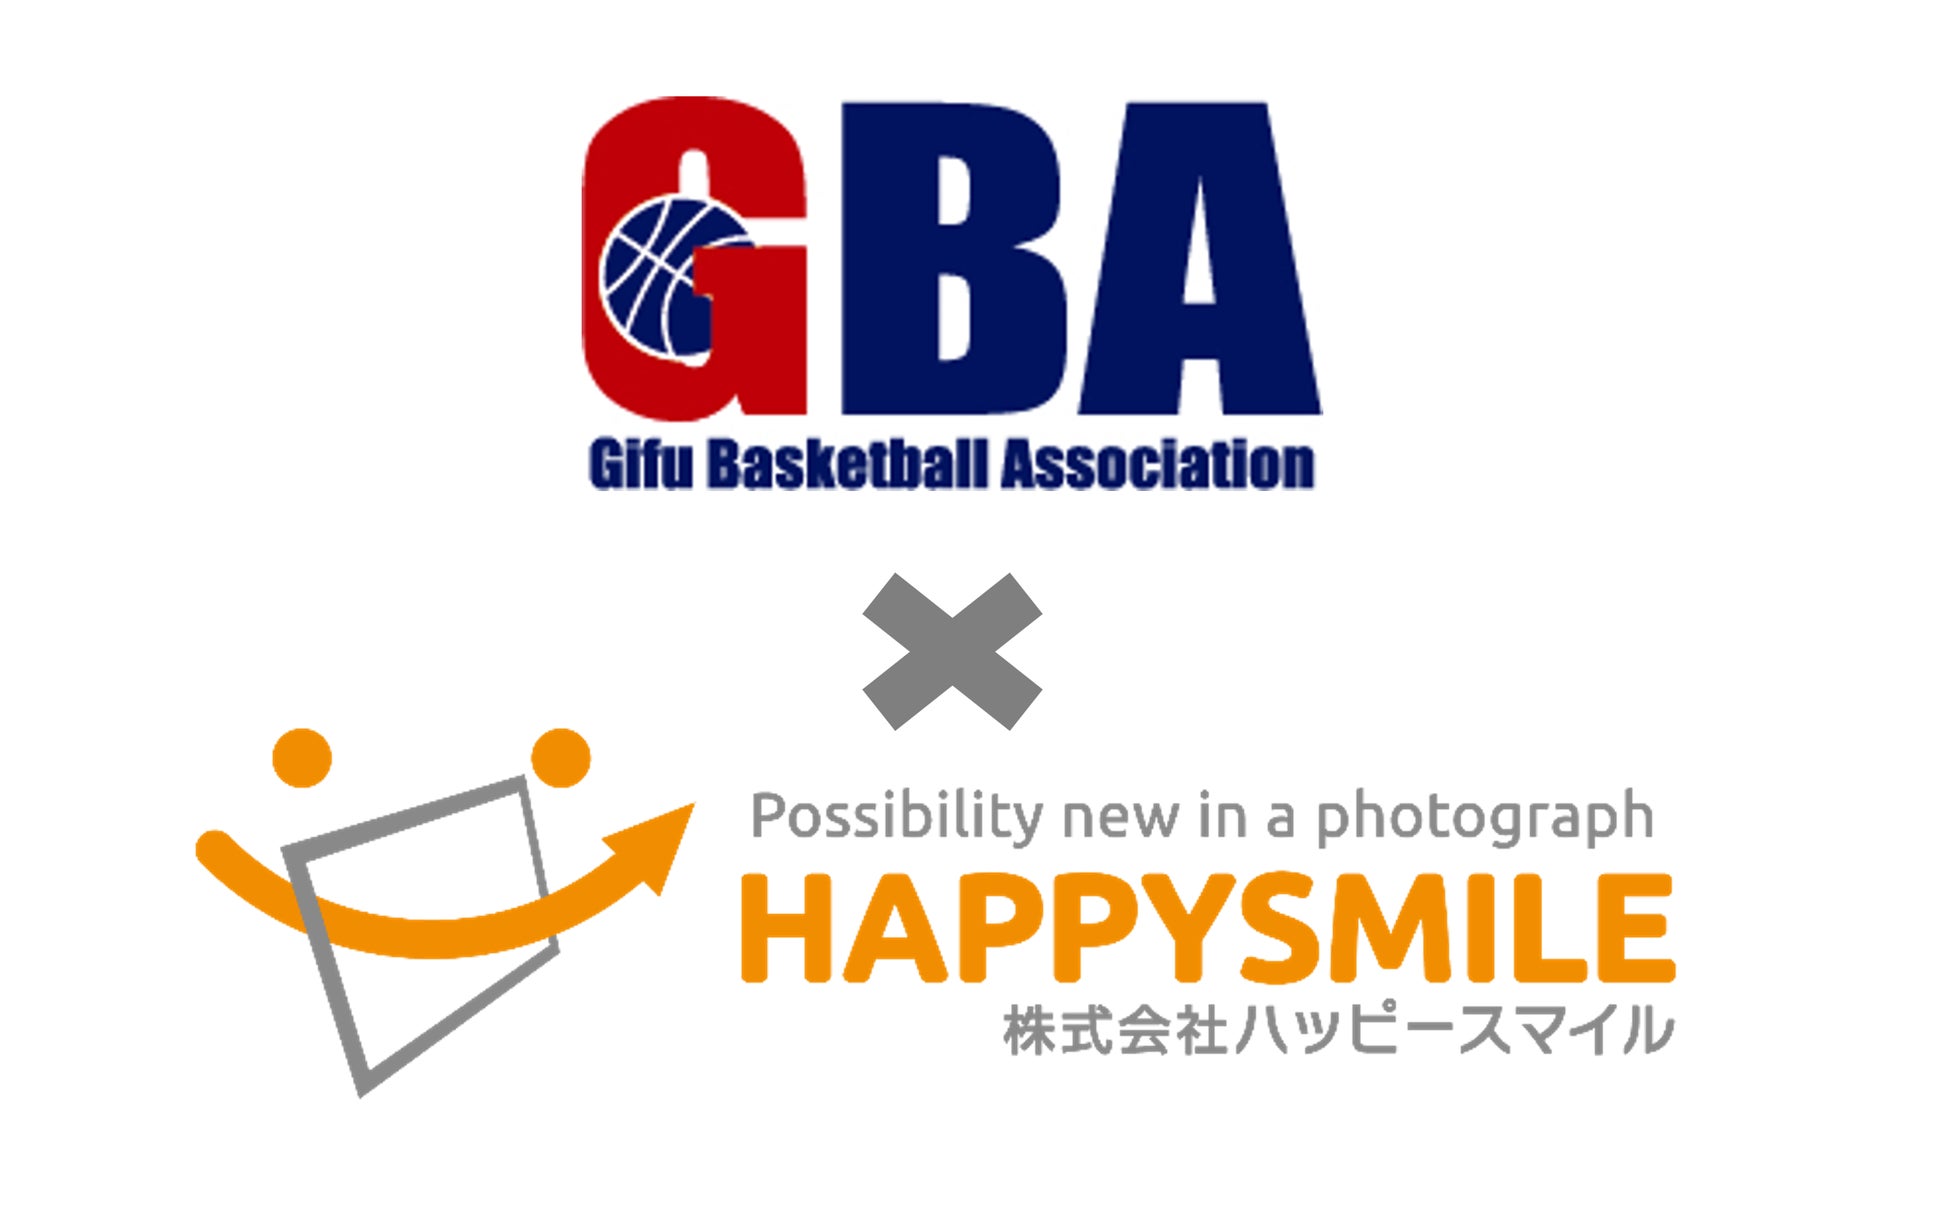 ハッピースマイルと『岐阜県バスケットボール協会』が業務提携オンライン写真展示販売サービス「みんなのおもいで.com」を導入